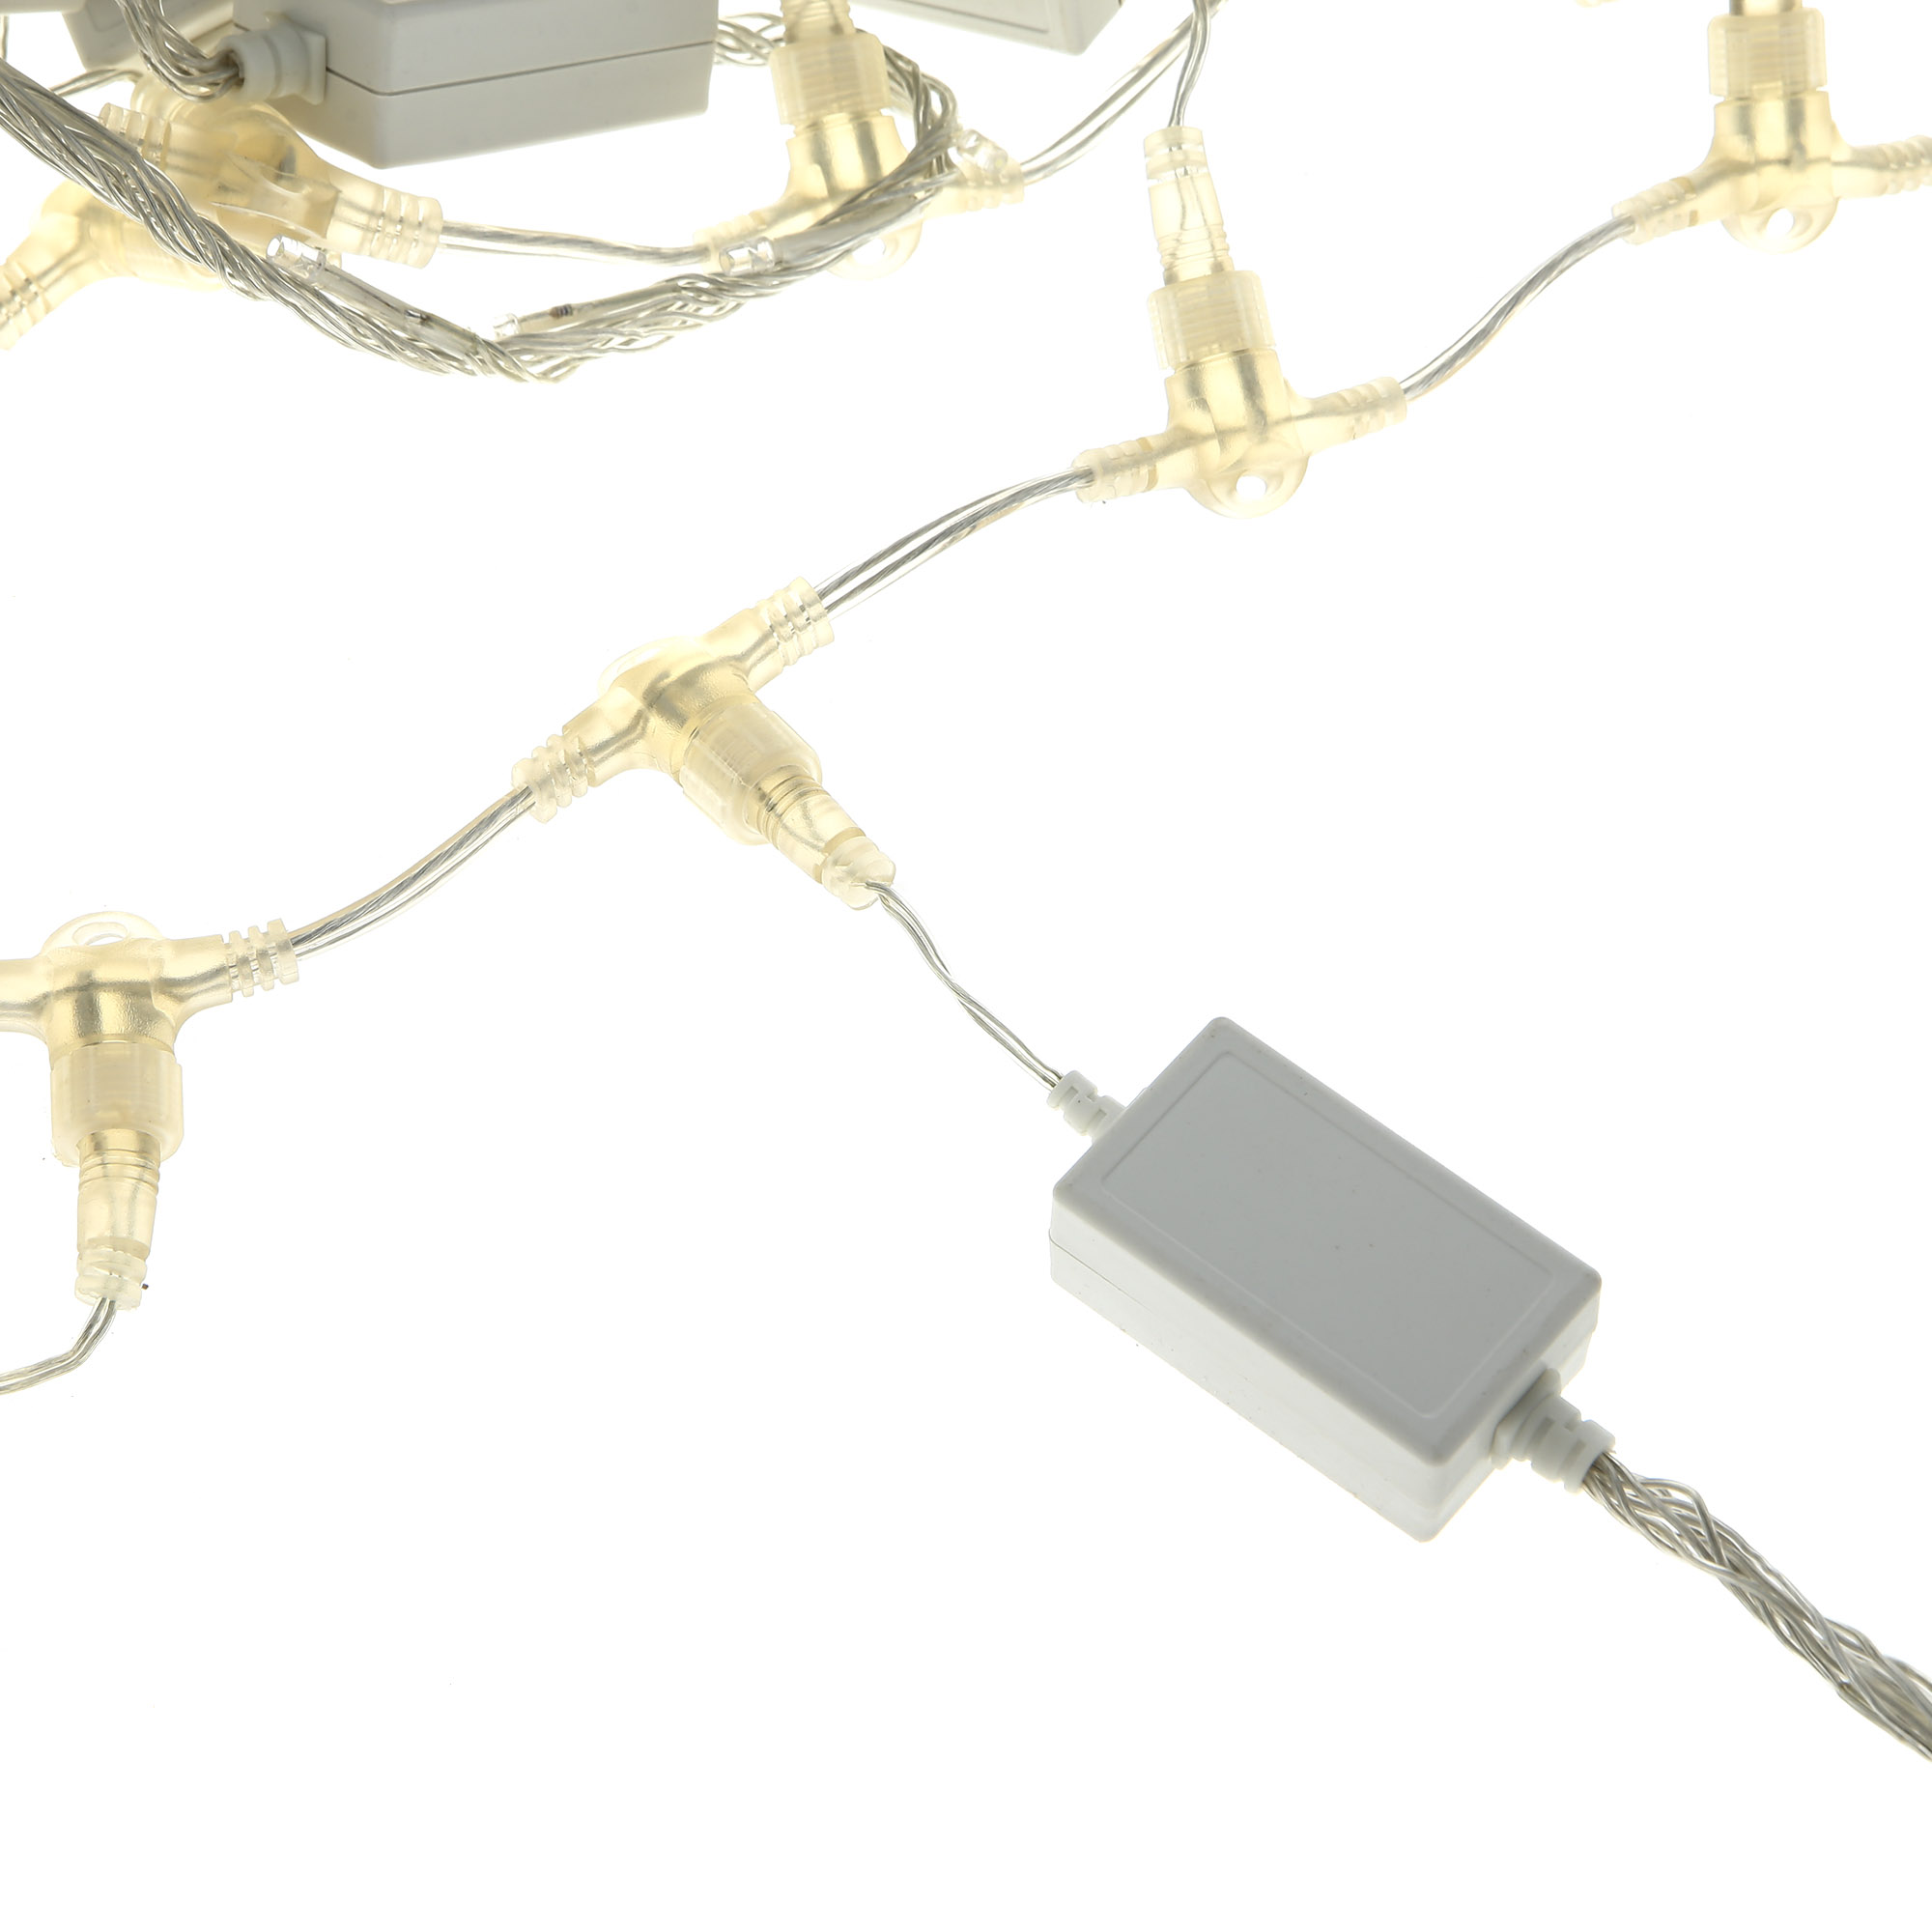 Электрогирлянда занавес Reason для помещений 1216 led (DLC1216/SF/W), цвет белый - фото 3